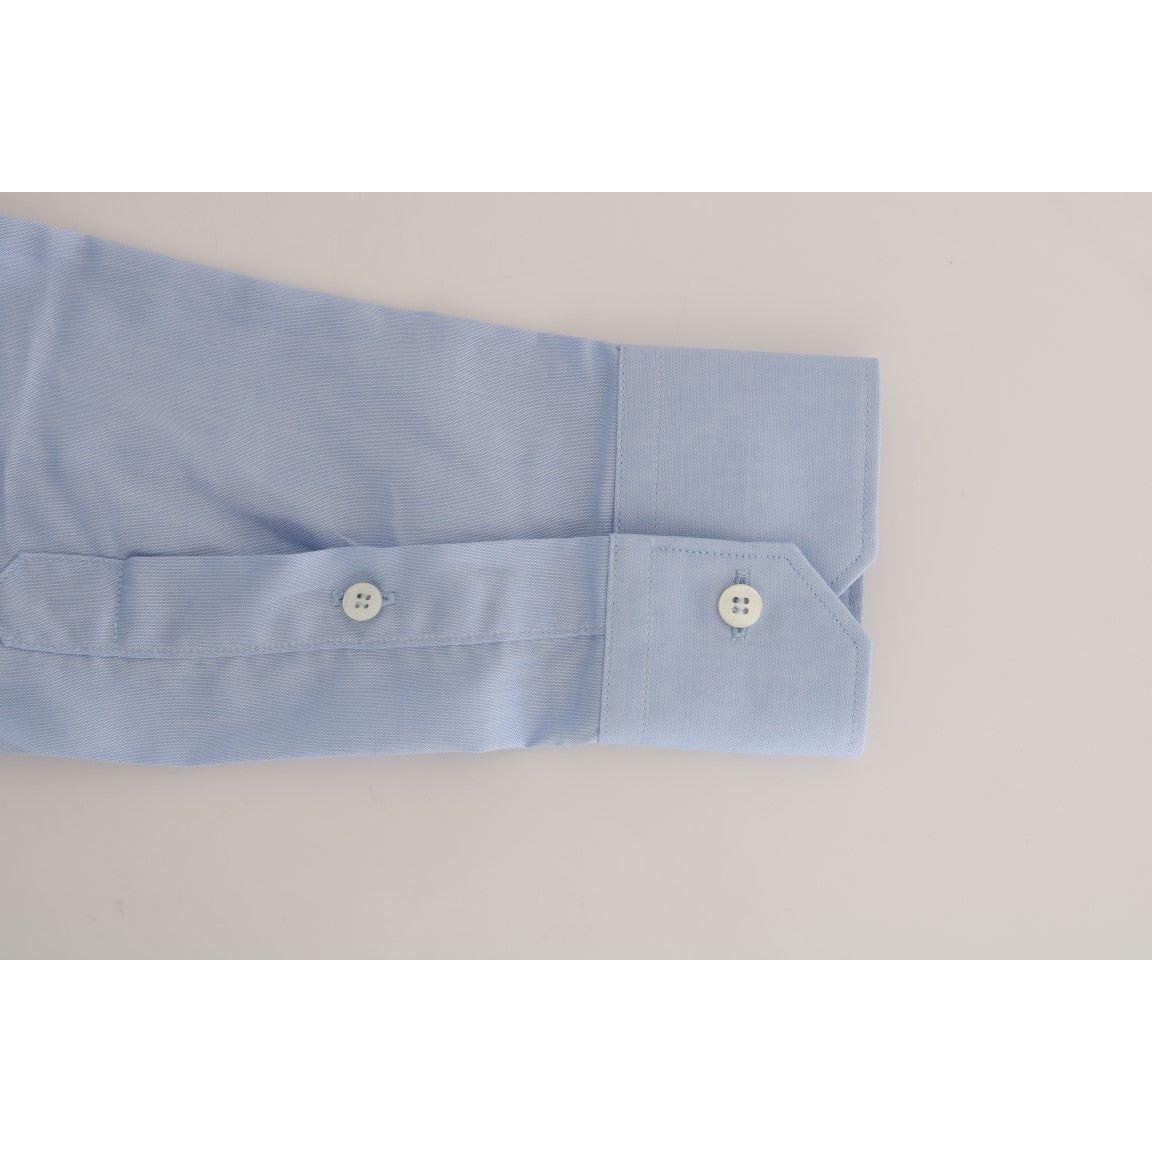 Cavalli Light Blue Cotton Dress Shirt light-blue-cotton-slim-fit-dress-shirt-2 461340-light-blue-cotton-slim-fit-dress-shirt-3-7.jpg